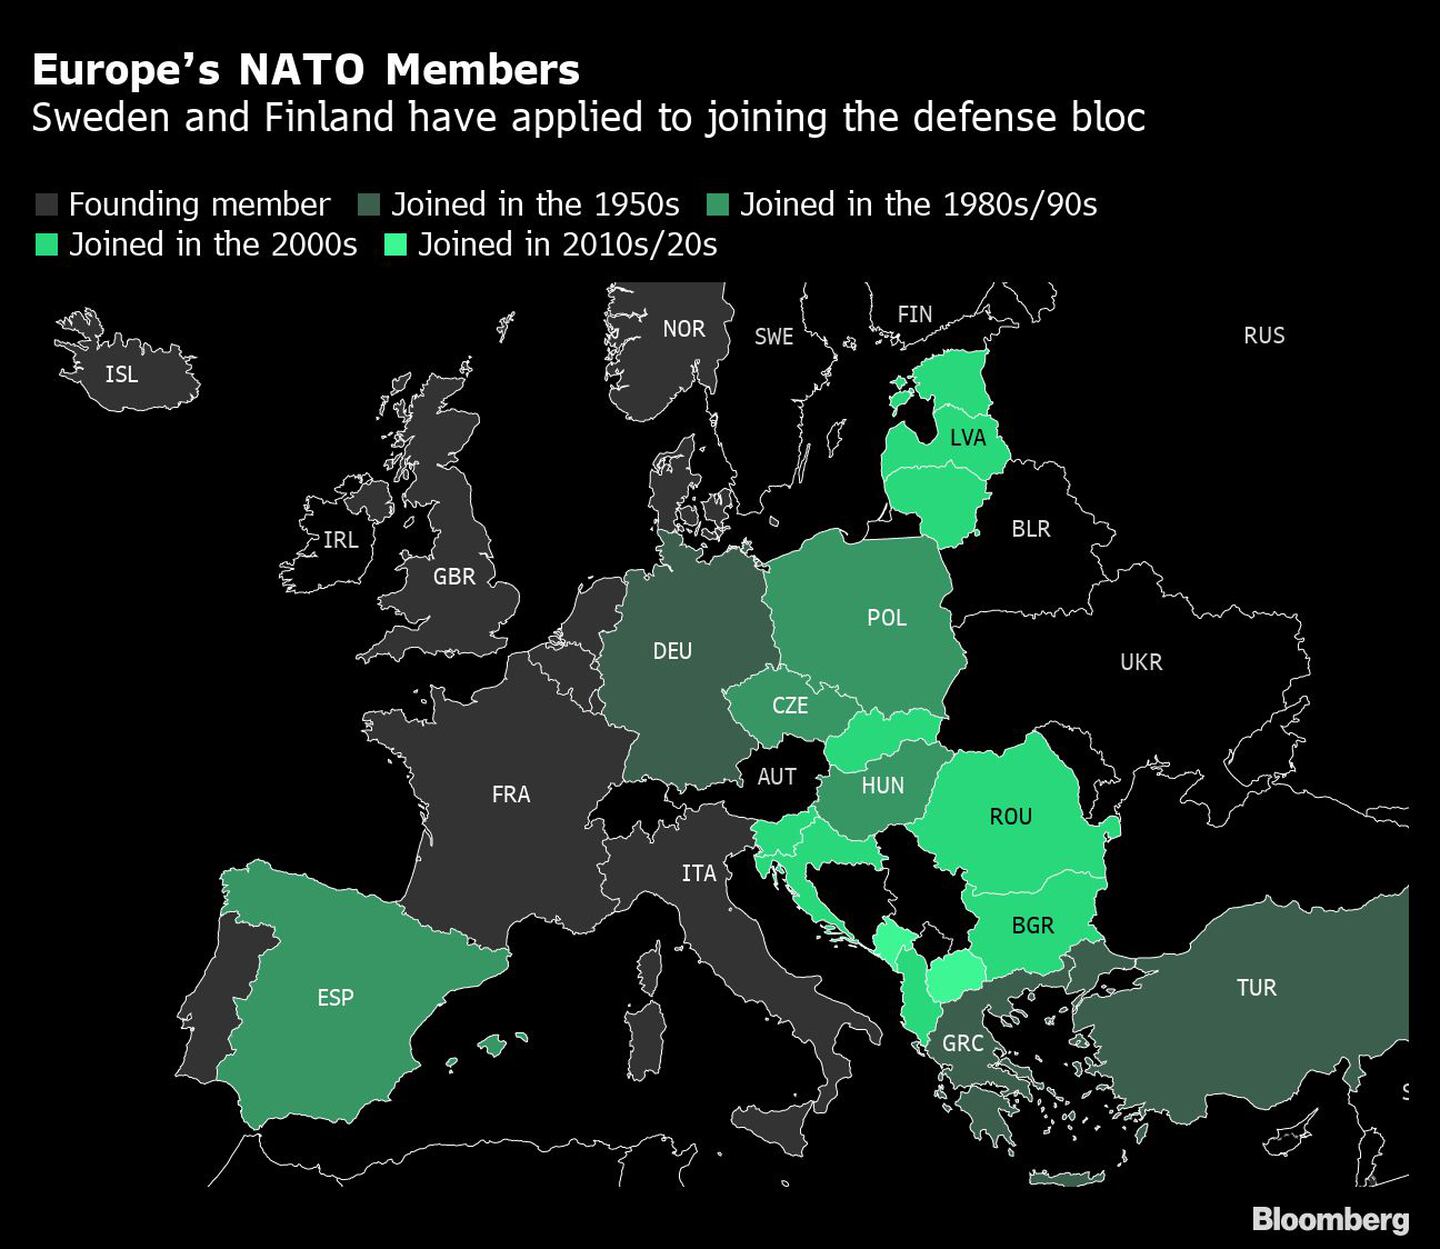 Miembros de la OTAN en Europa | Suecia y Finlandia han solicitado unirse al bloque de defensa  dfd